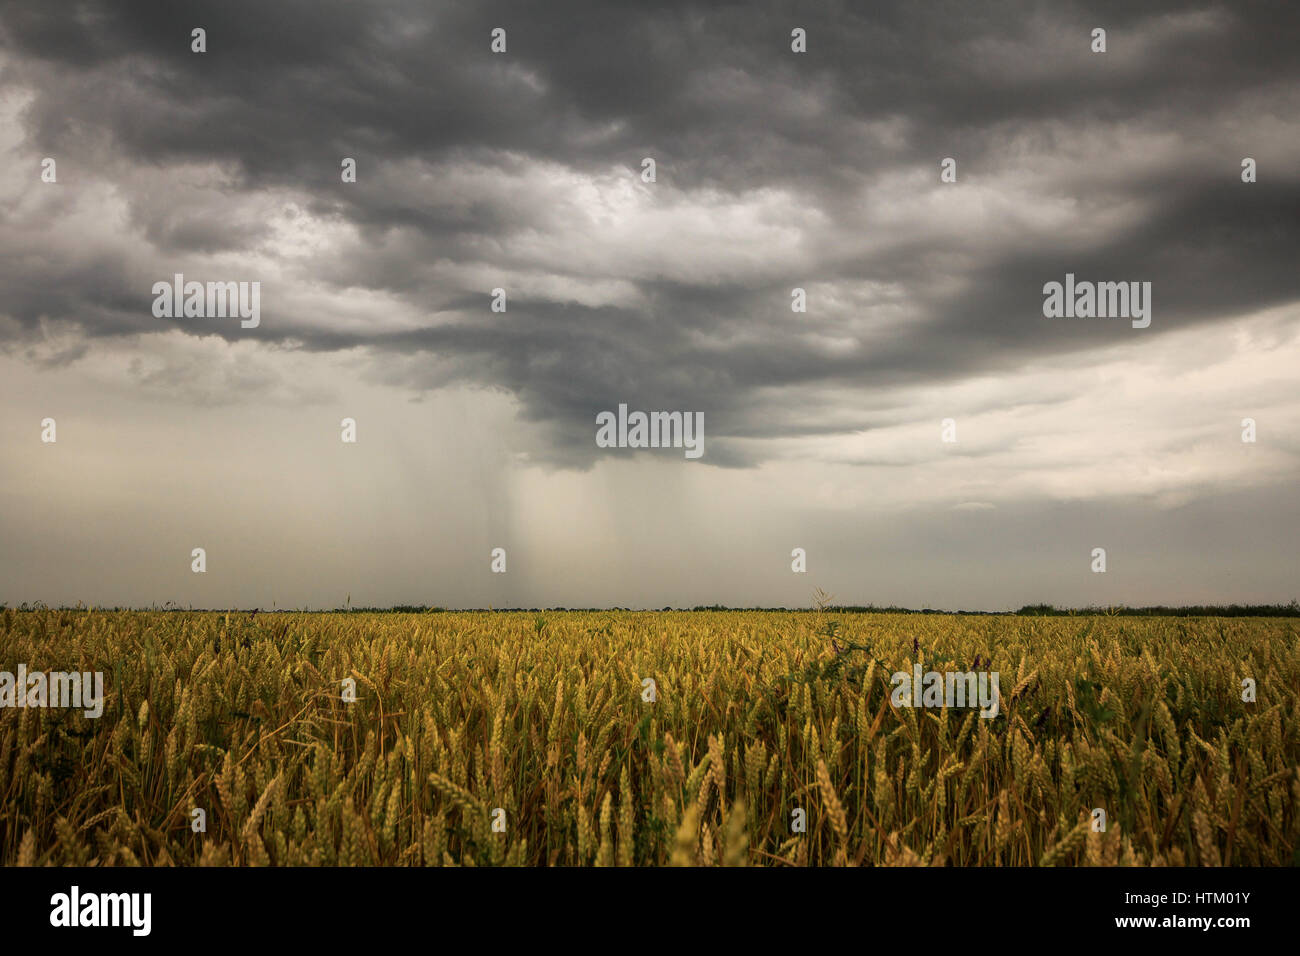 Imagen de un cielo tormentoso durante el verano Foto de stock